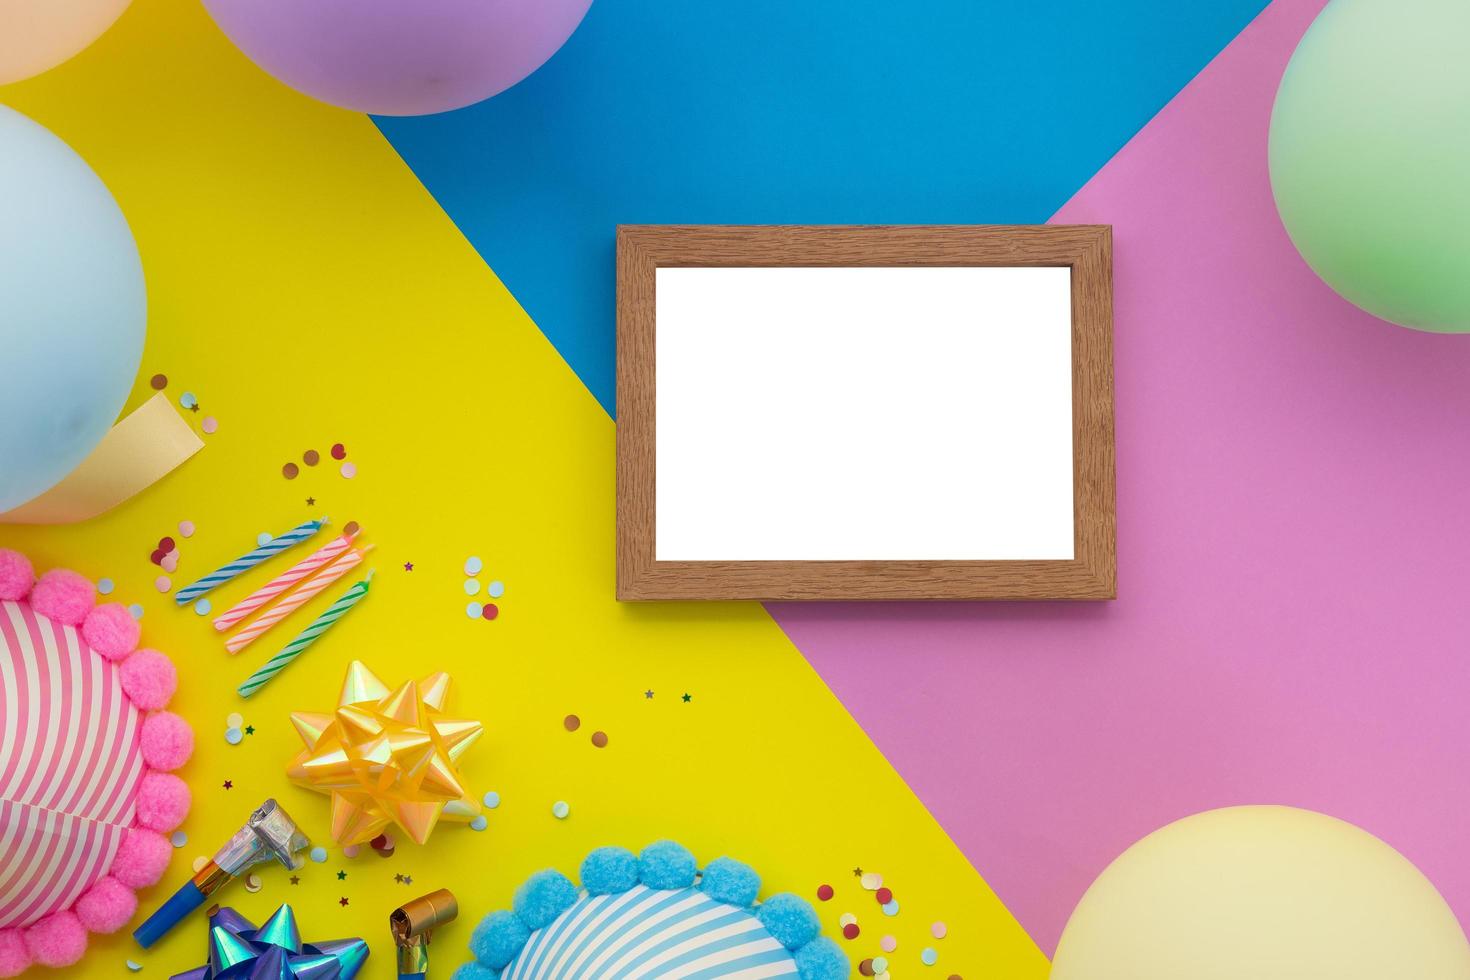 fond de joyeux anniversaire, décoration de fête colorée à plat avec carte d'invitation flyer sur fond géométrique jaune, bleu et rose pastel photo